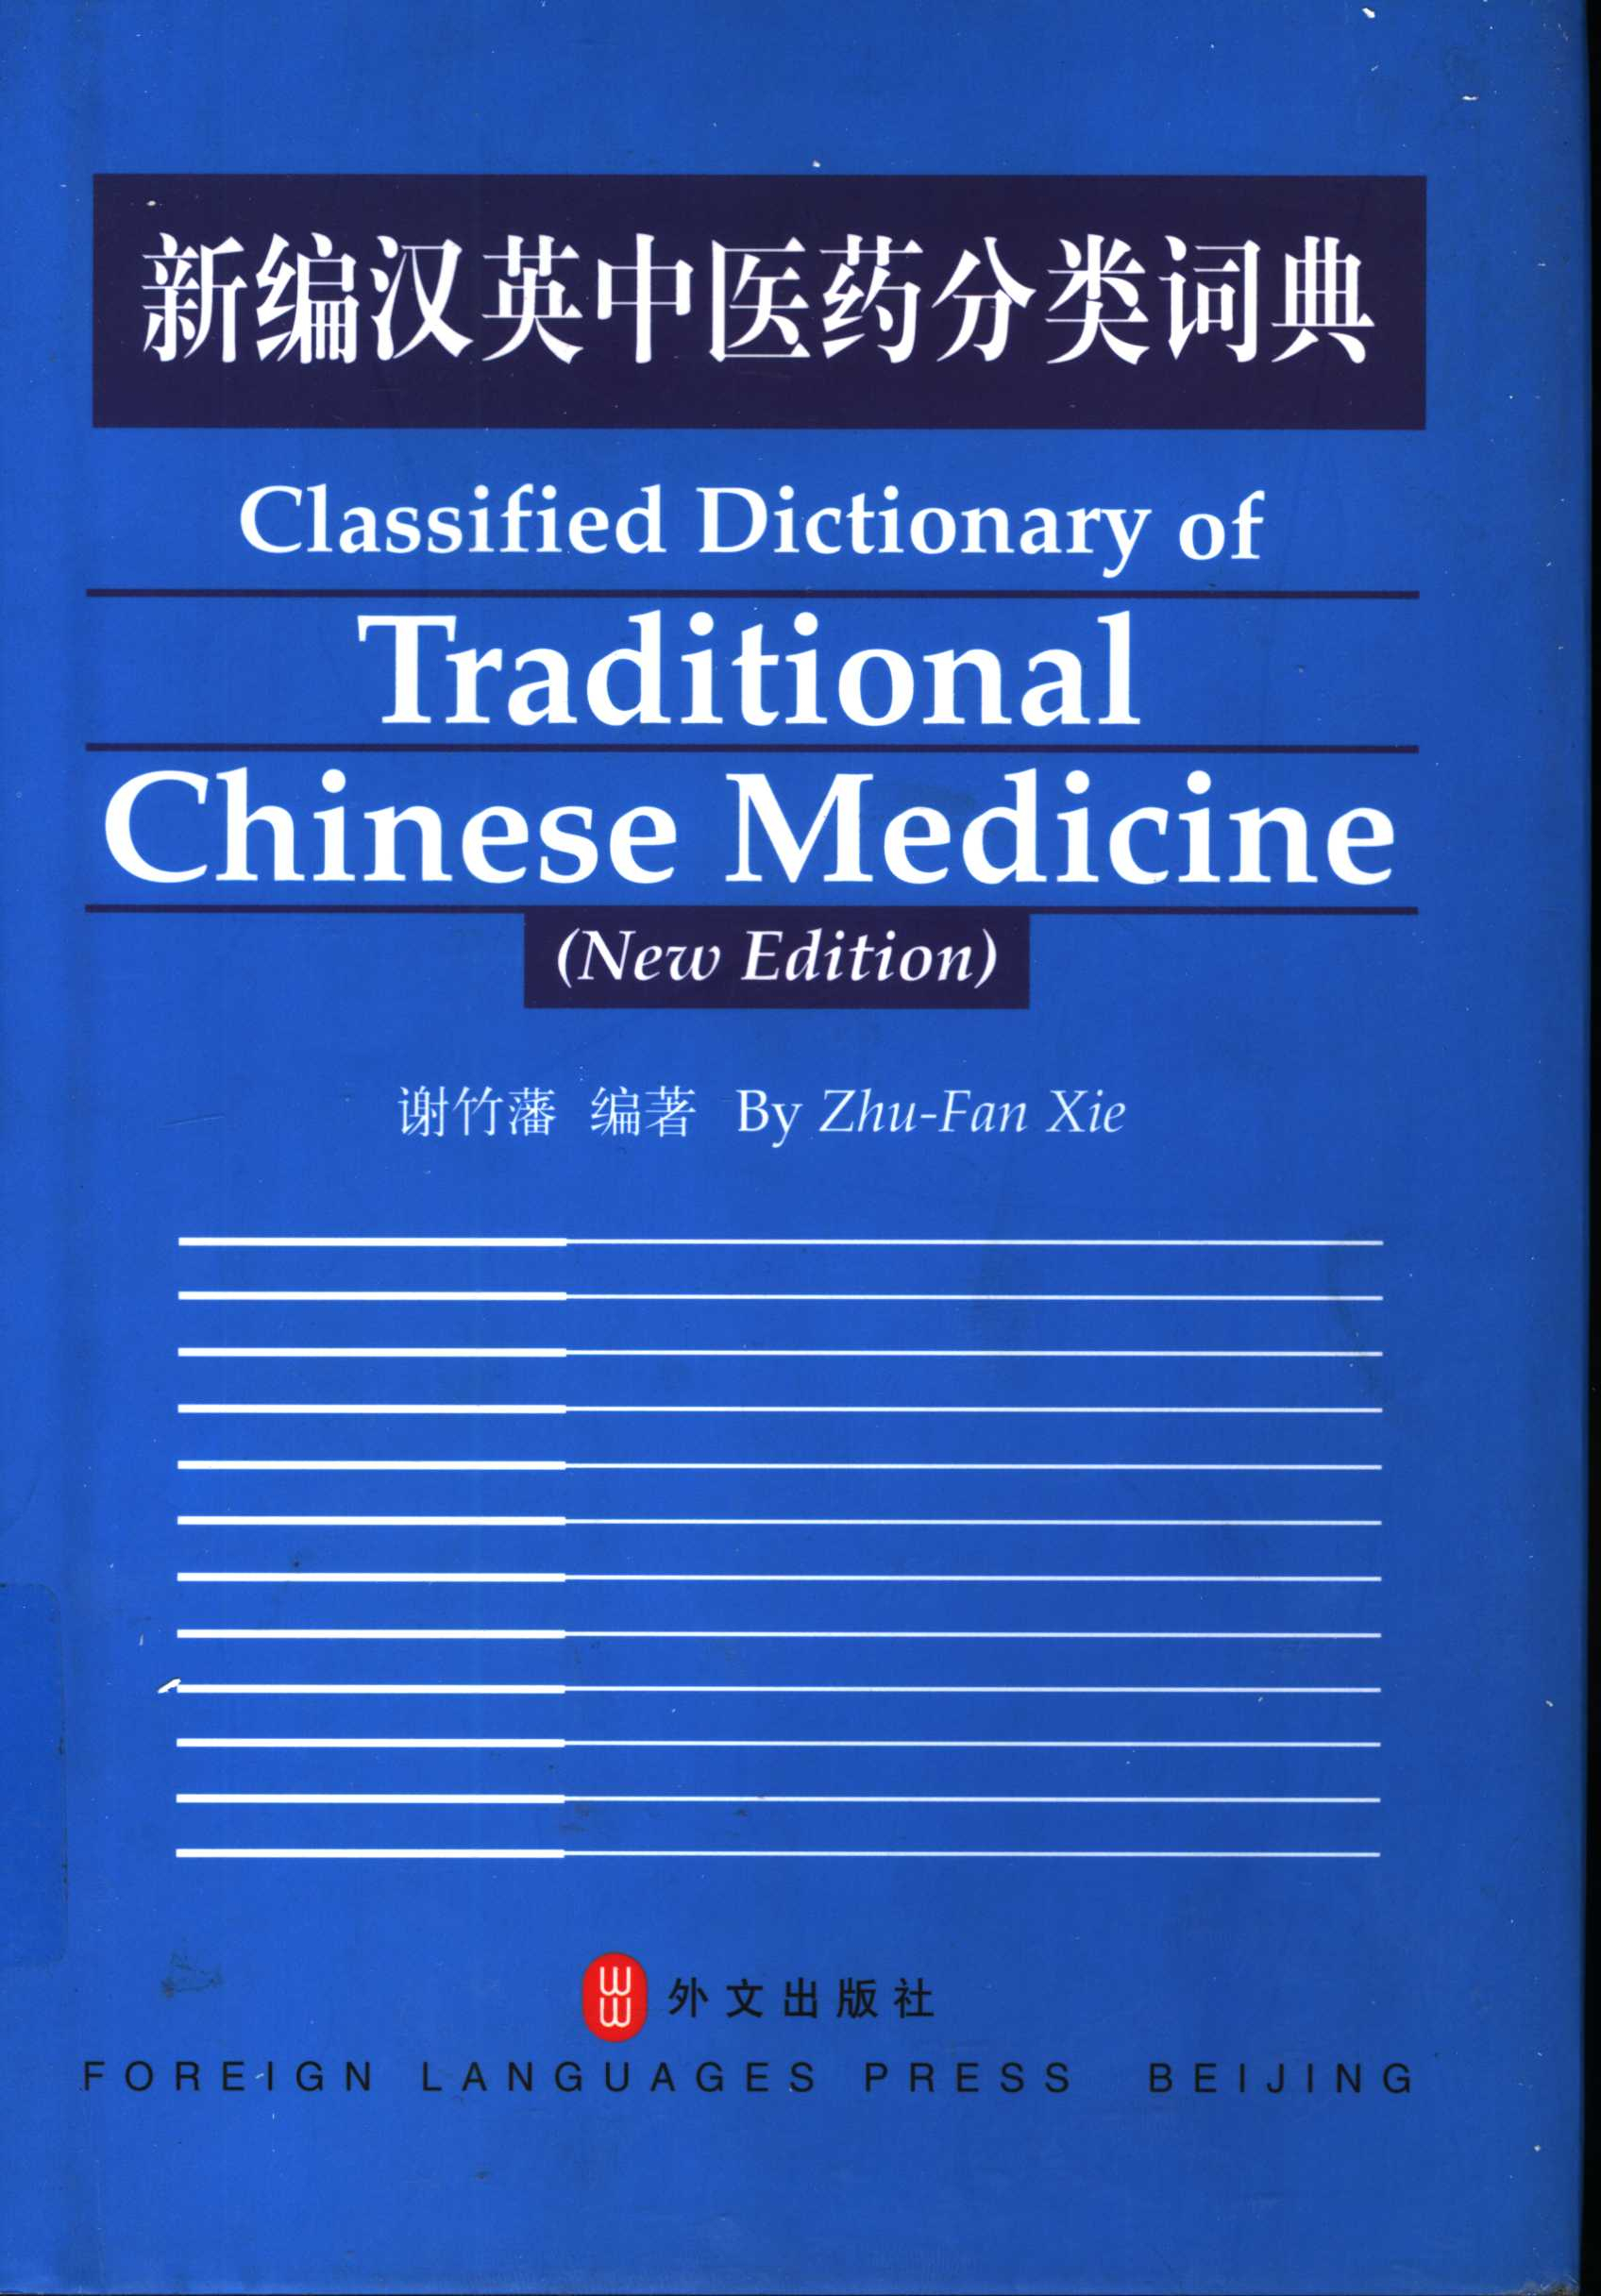 电子书- 13本中医和针灸汉英词典PDF 下载| 华夏中医论坛